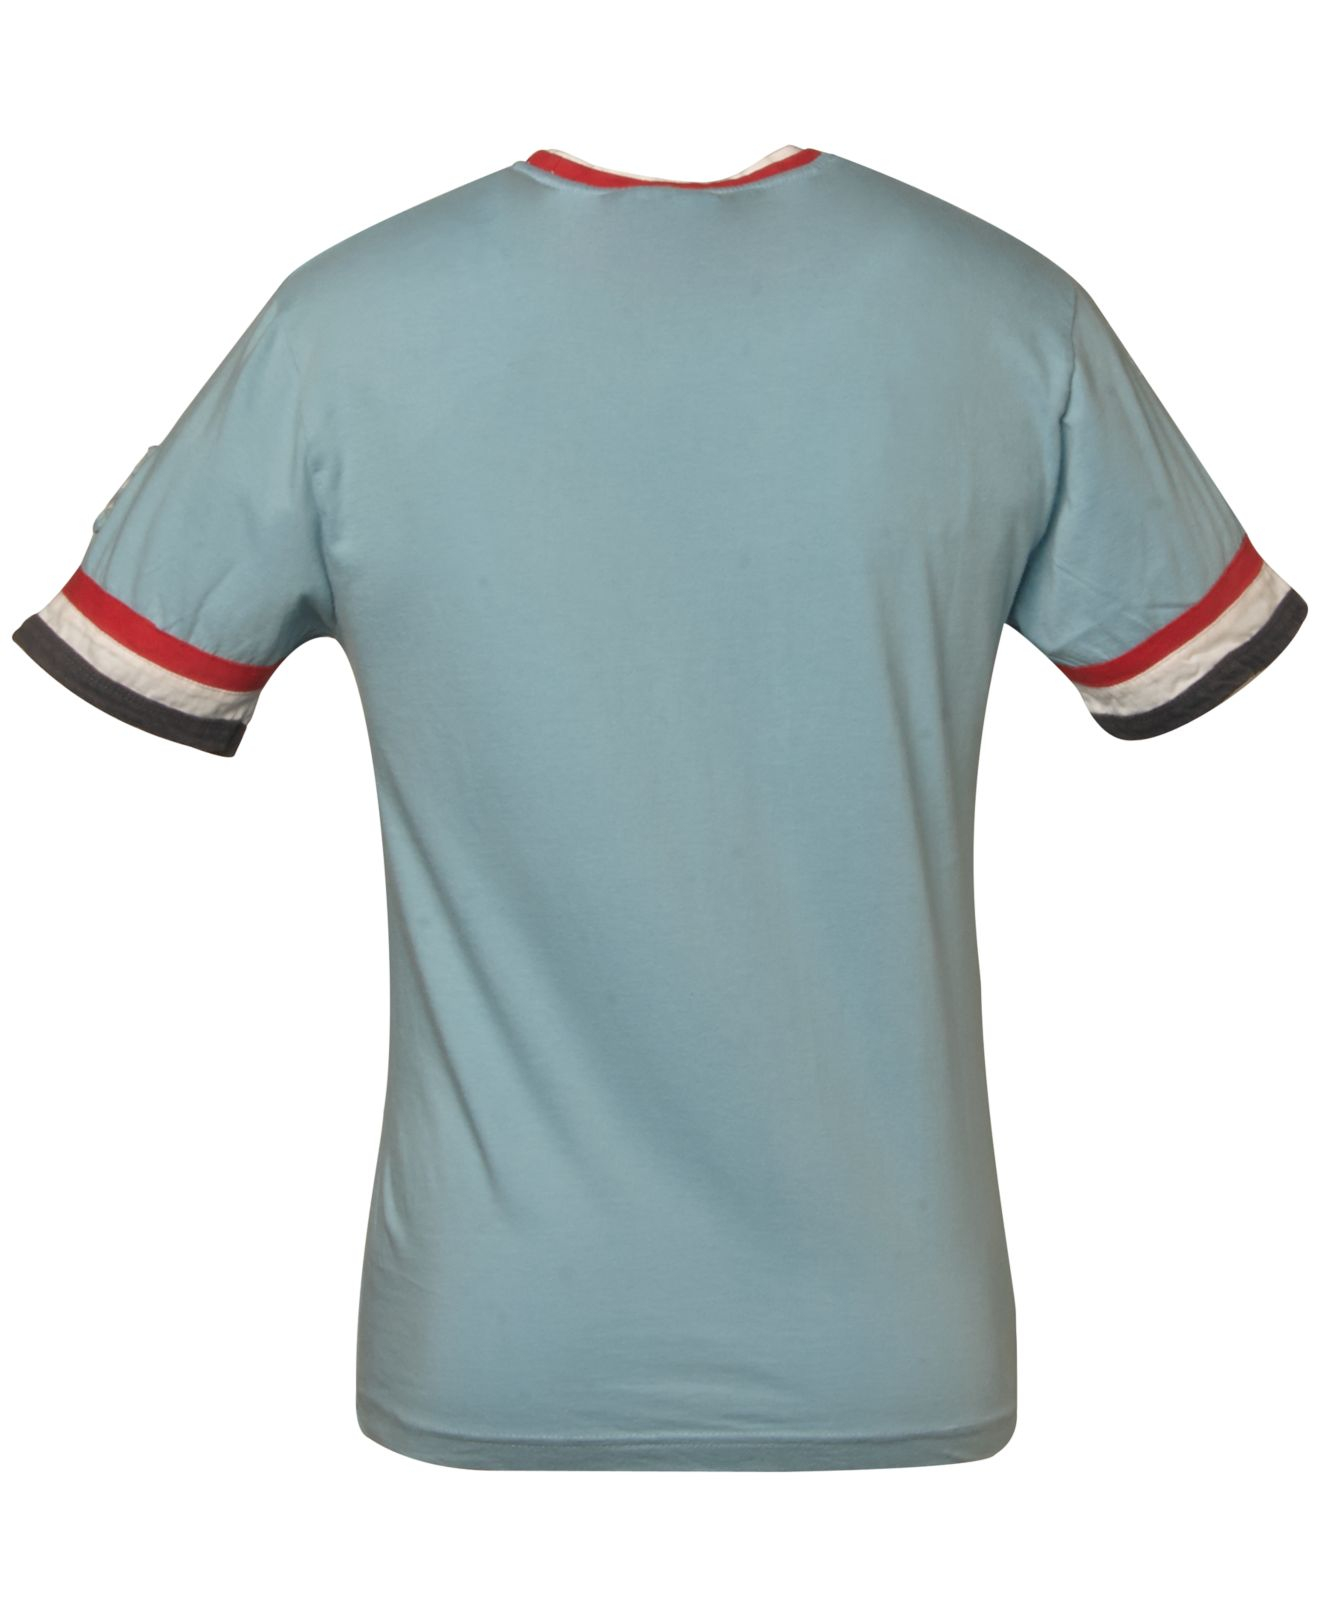 Men's St. Louis Cardinals Black/Tan Camo T-Shirt